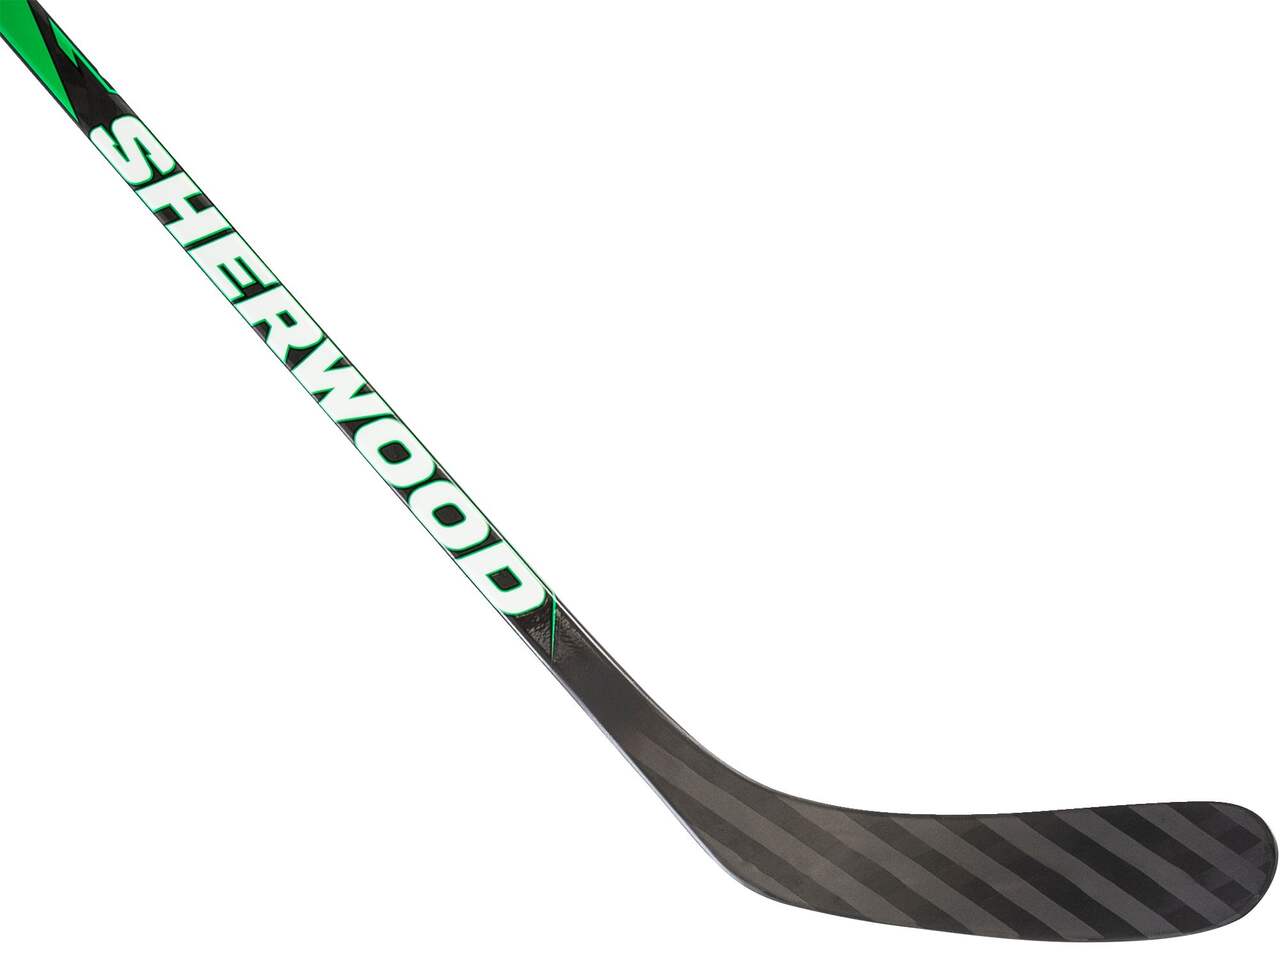 Sherwood Playrite 2 Composite Hockey Stick, Junior, 35 Flex